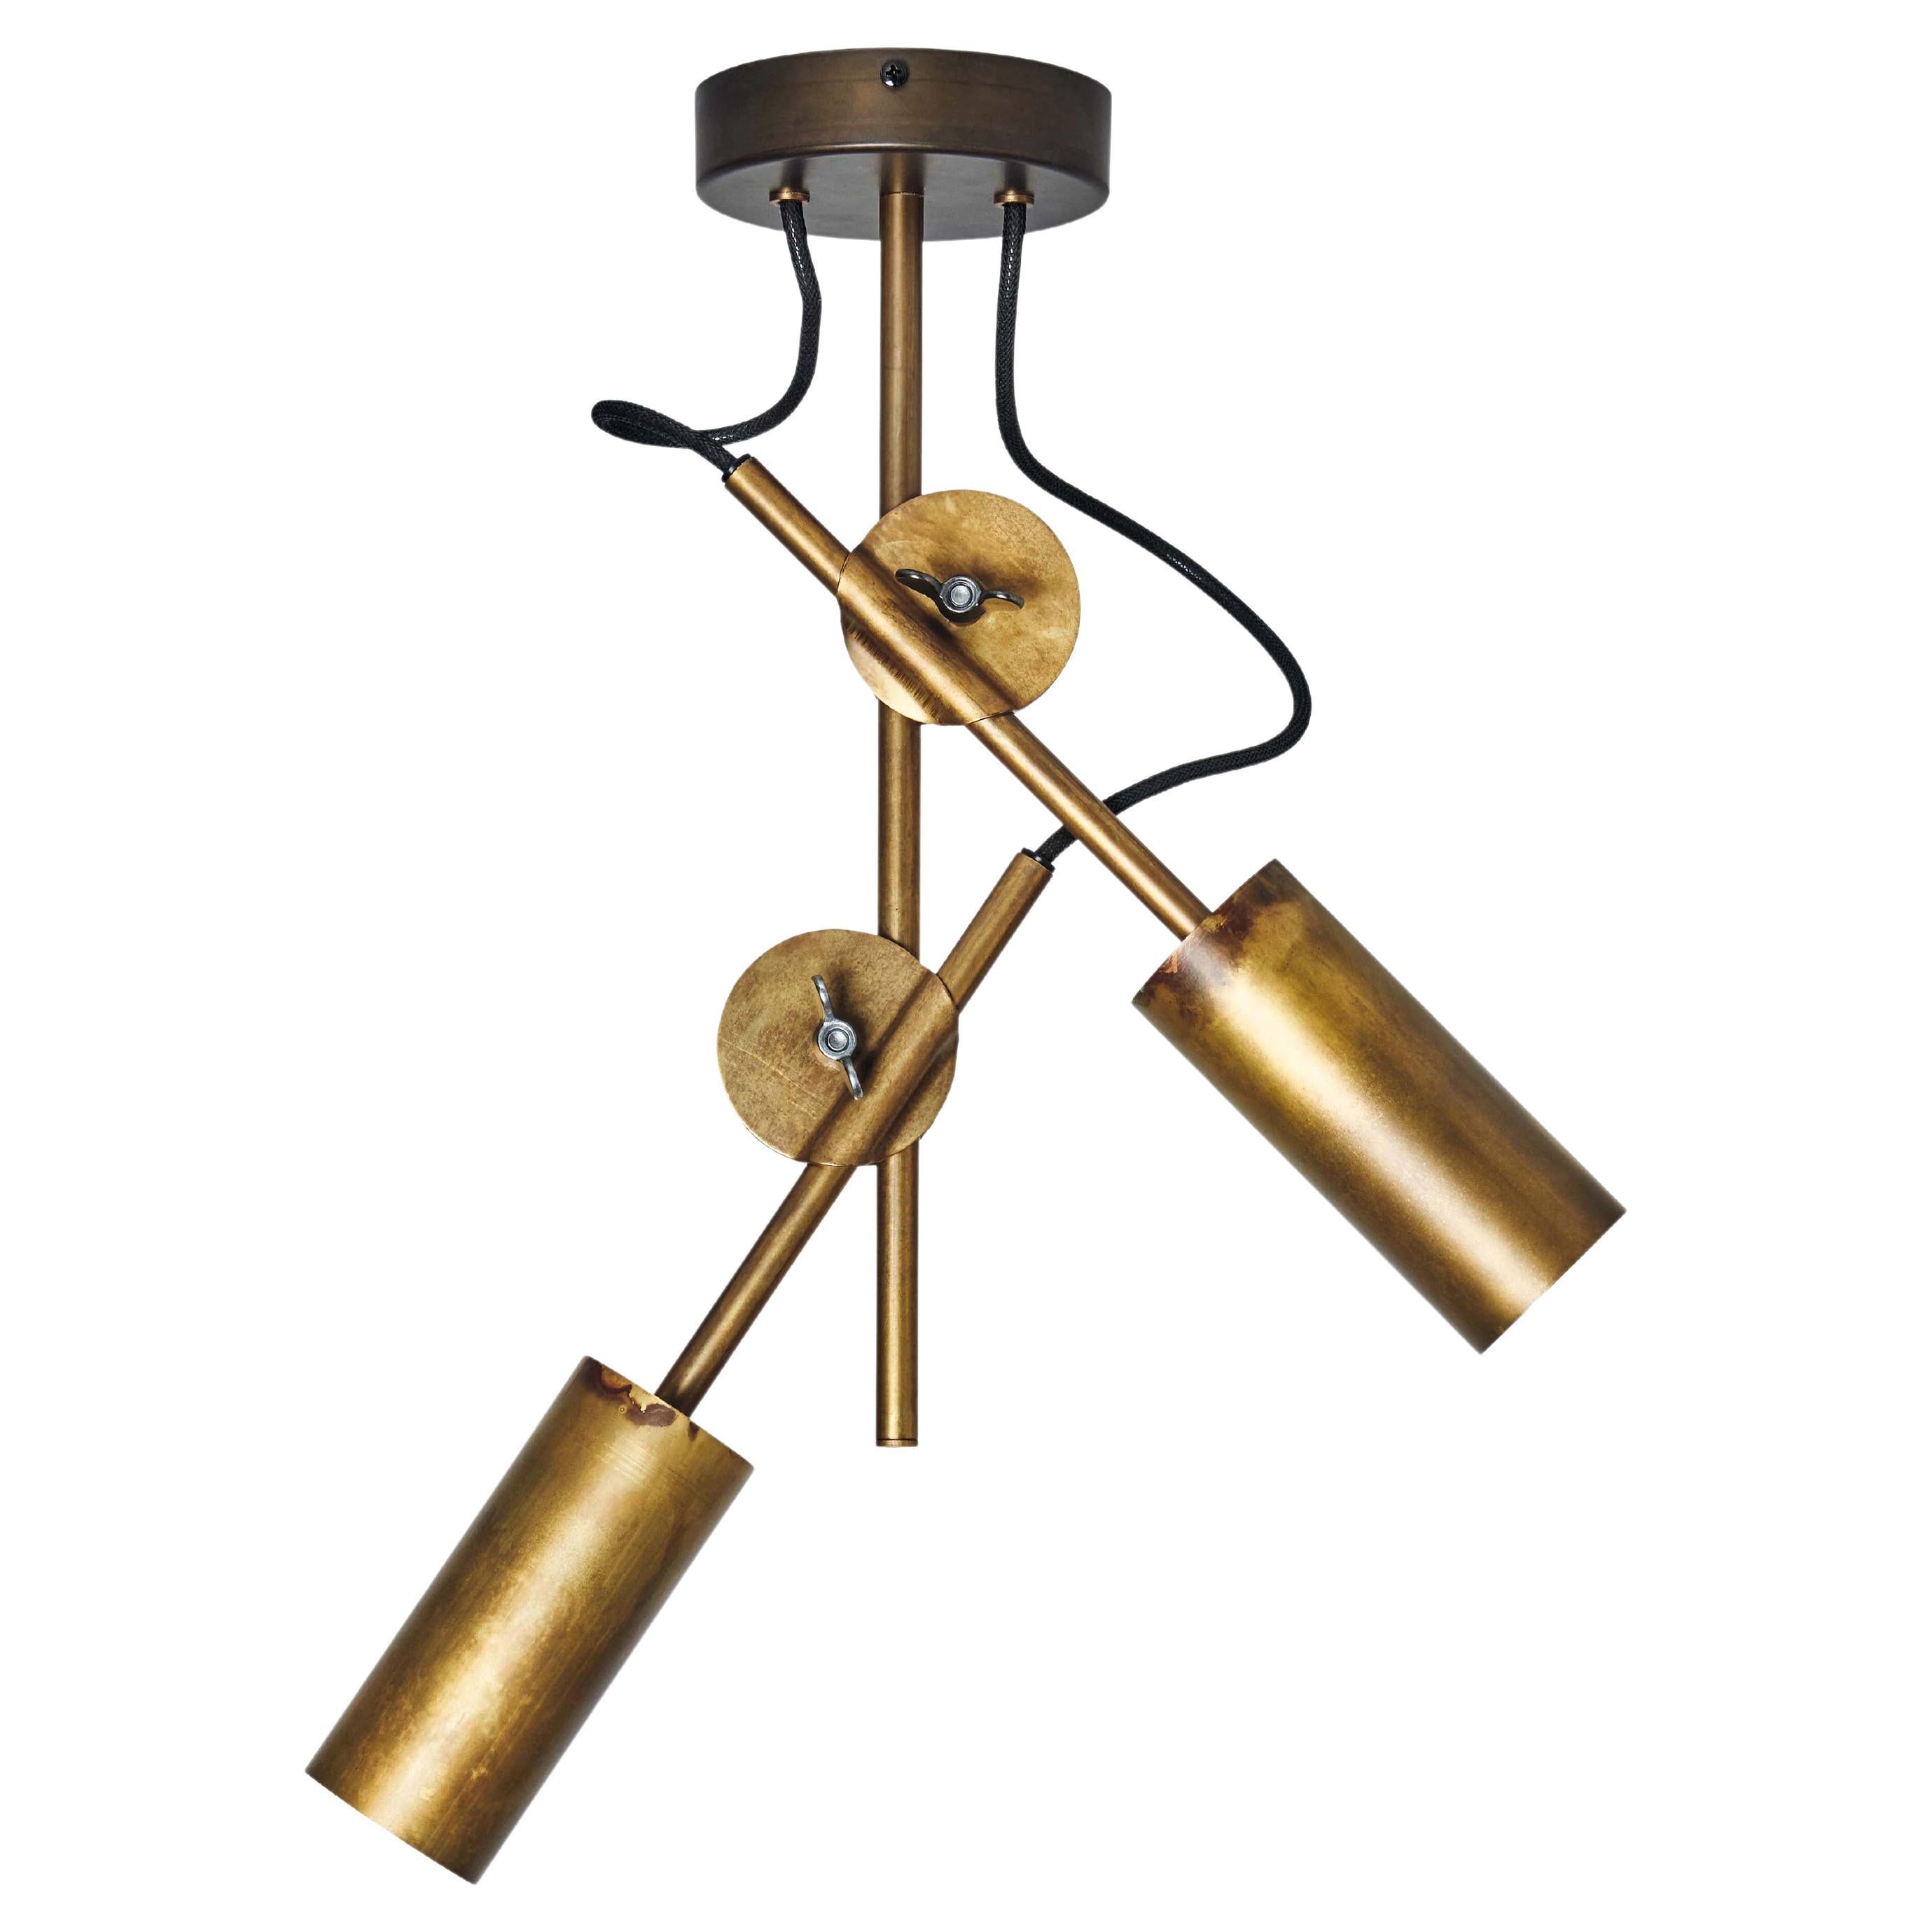 Johan Carpner 3452-6 Stav Spot 2 Brass Ceiling Lamp by Konsthantverk